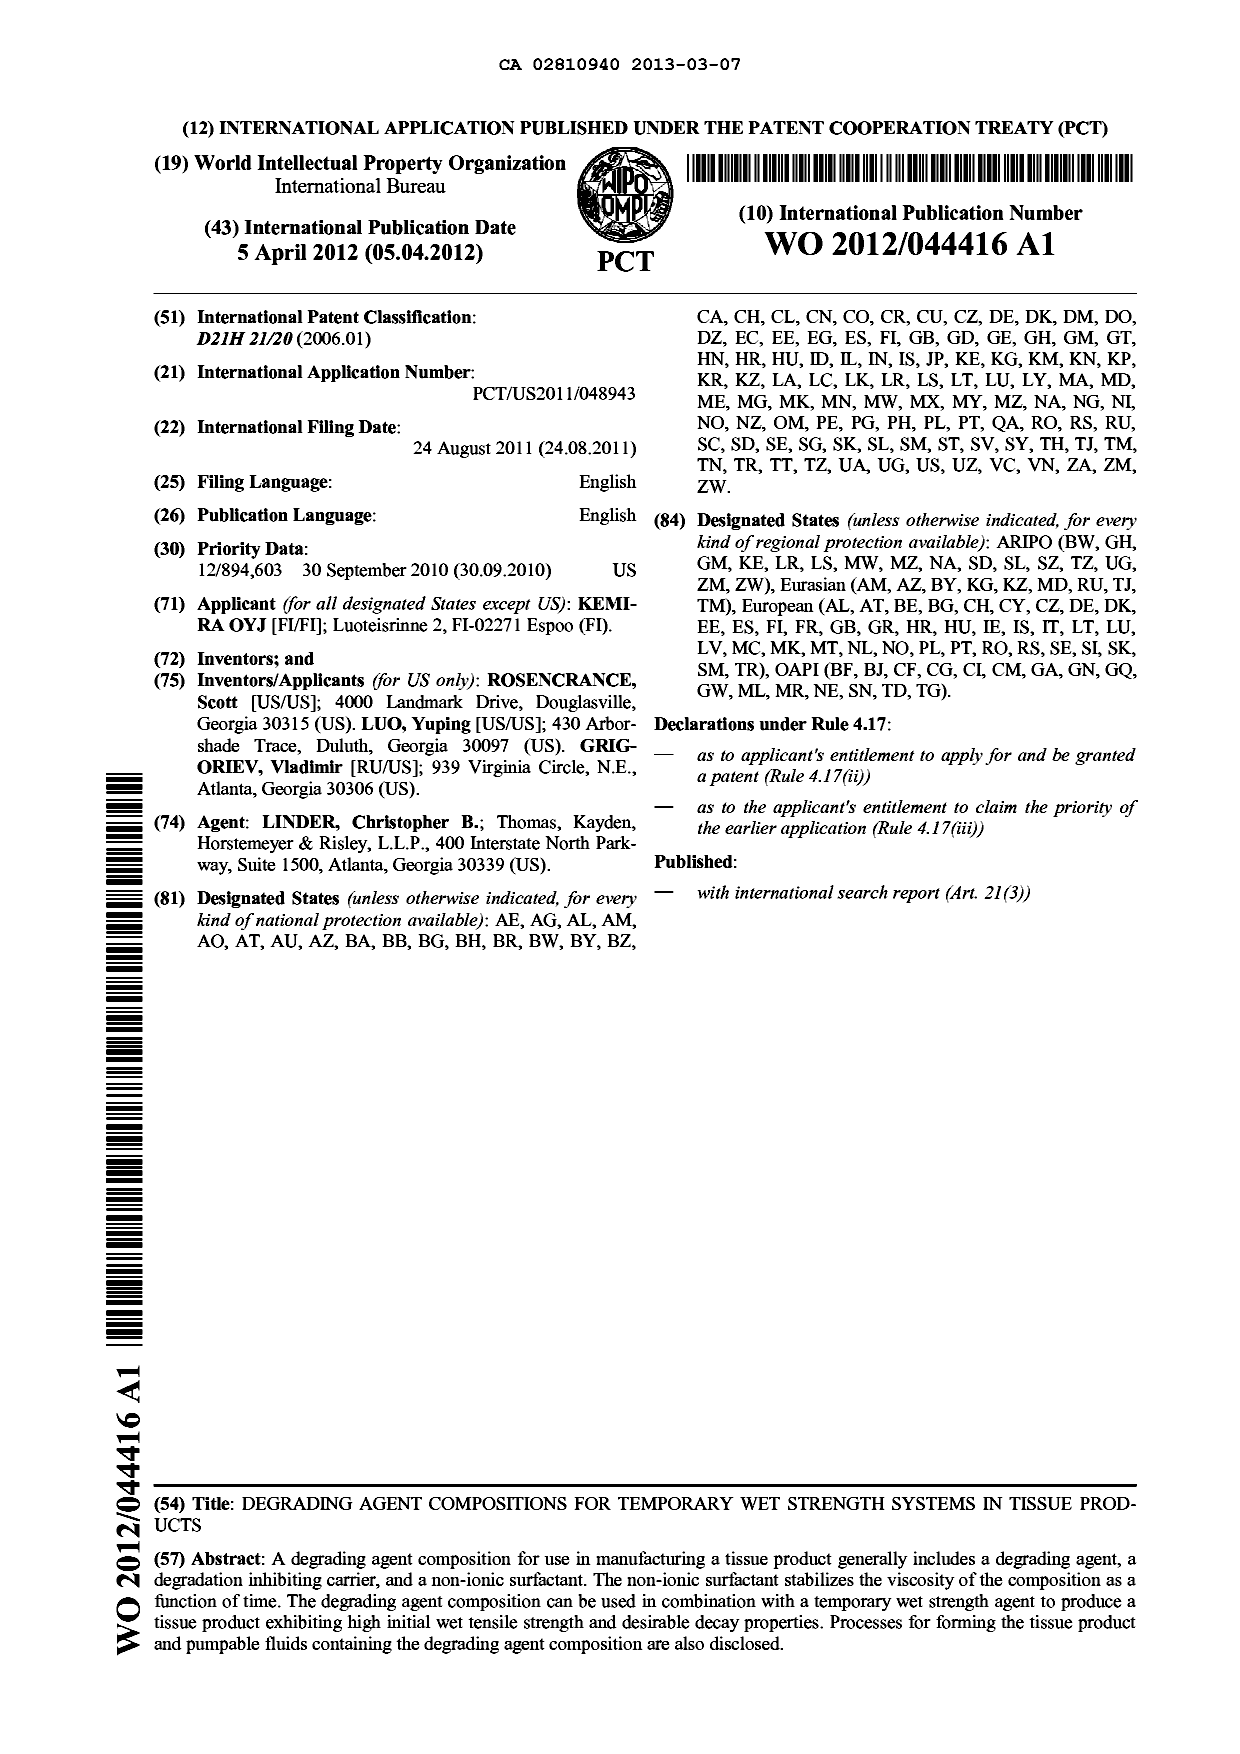 Document de brevet canadien 2810940. Abrégé 20130307. Image 1 de 1